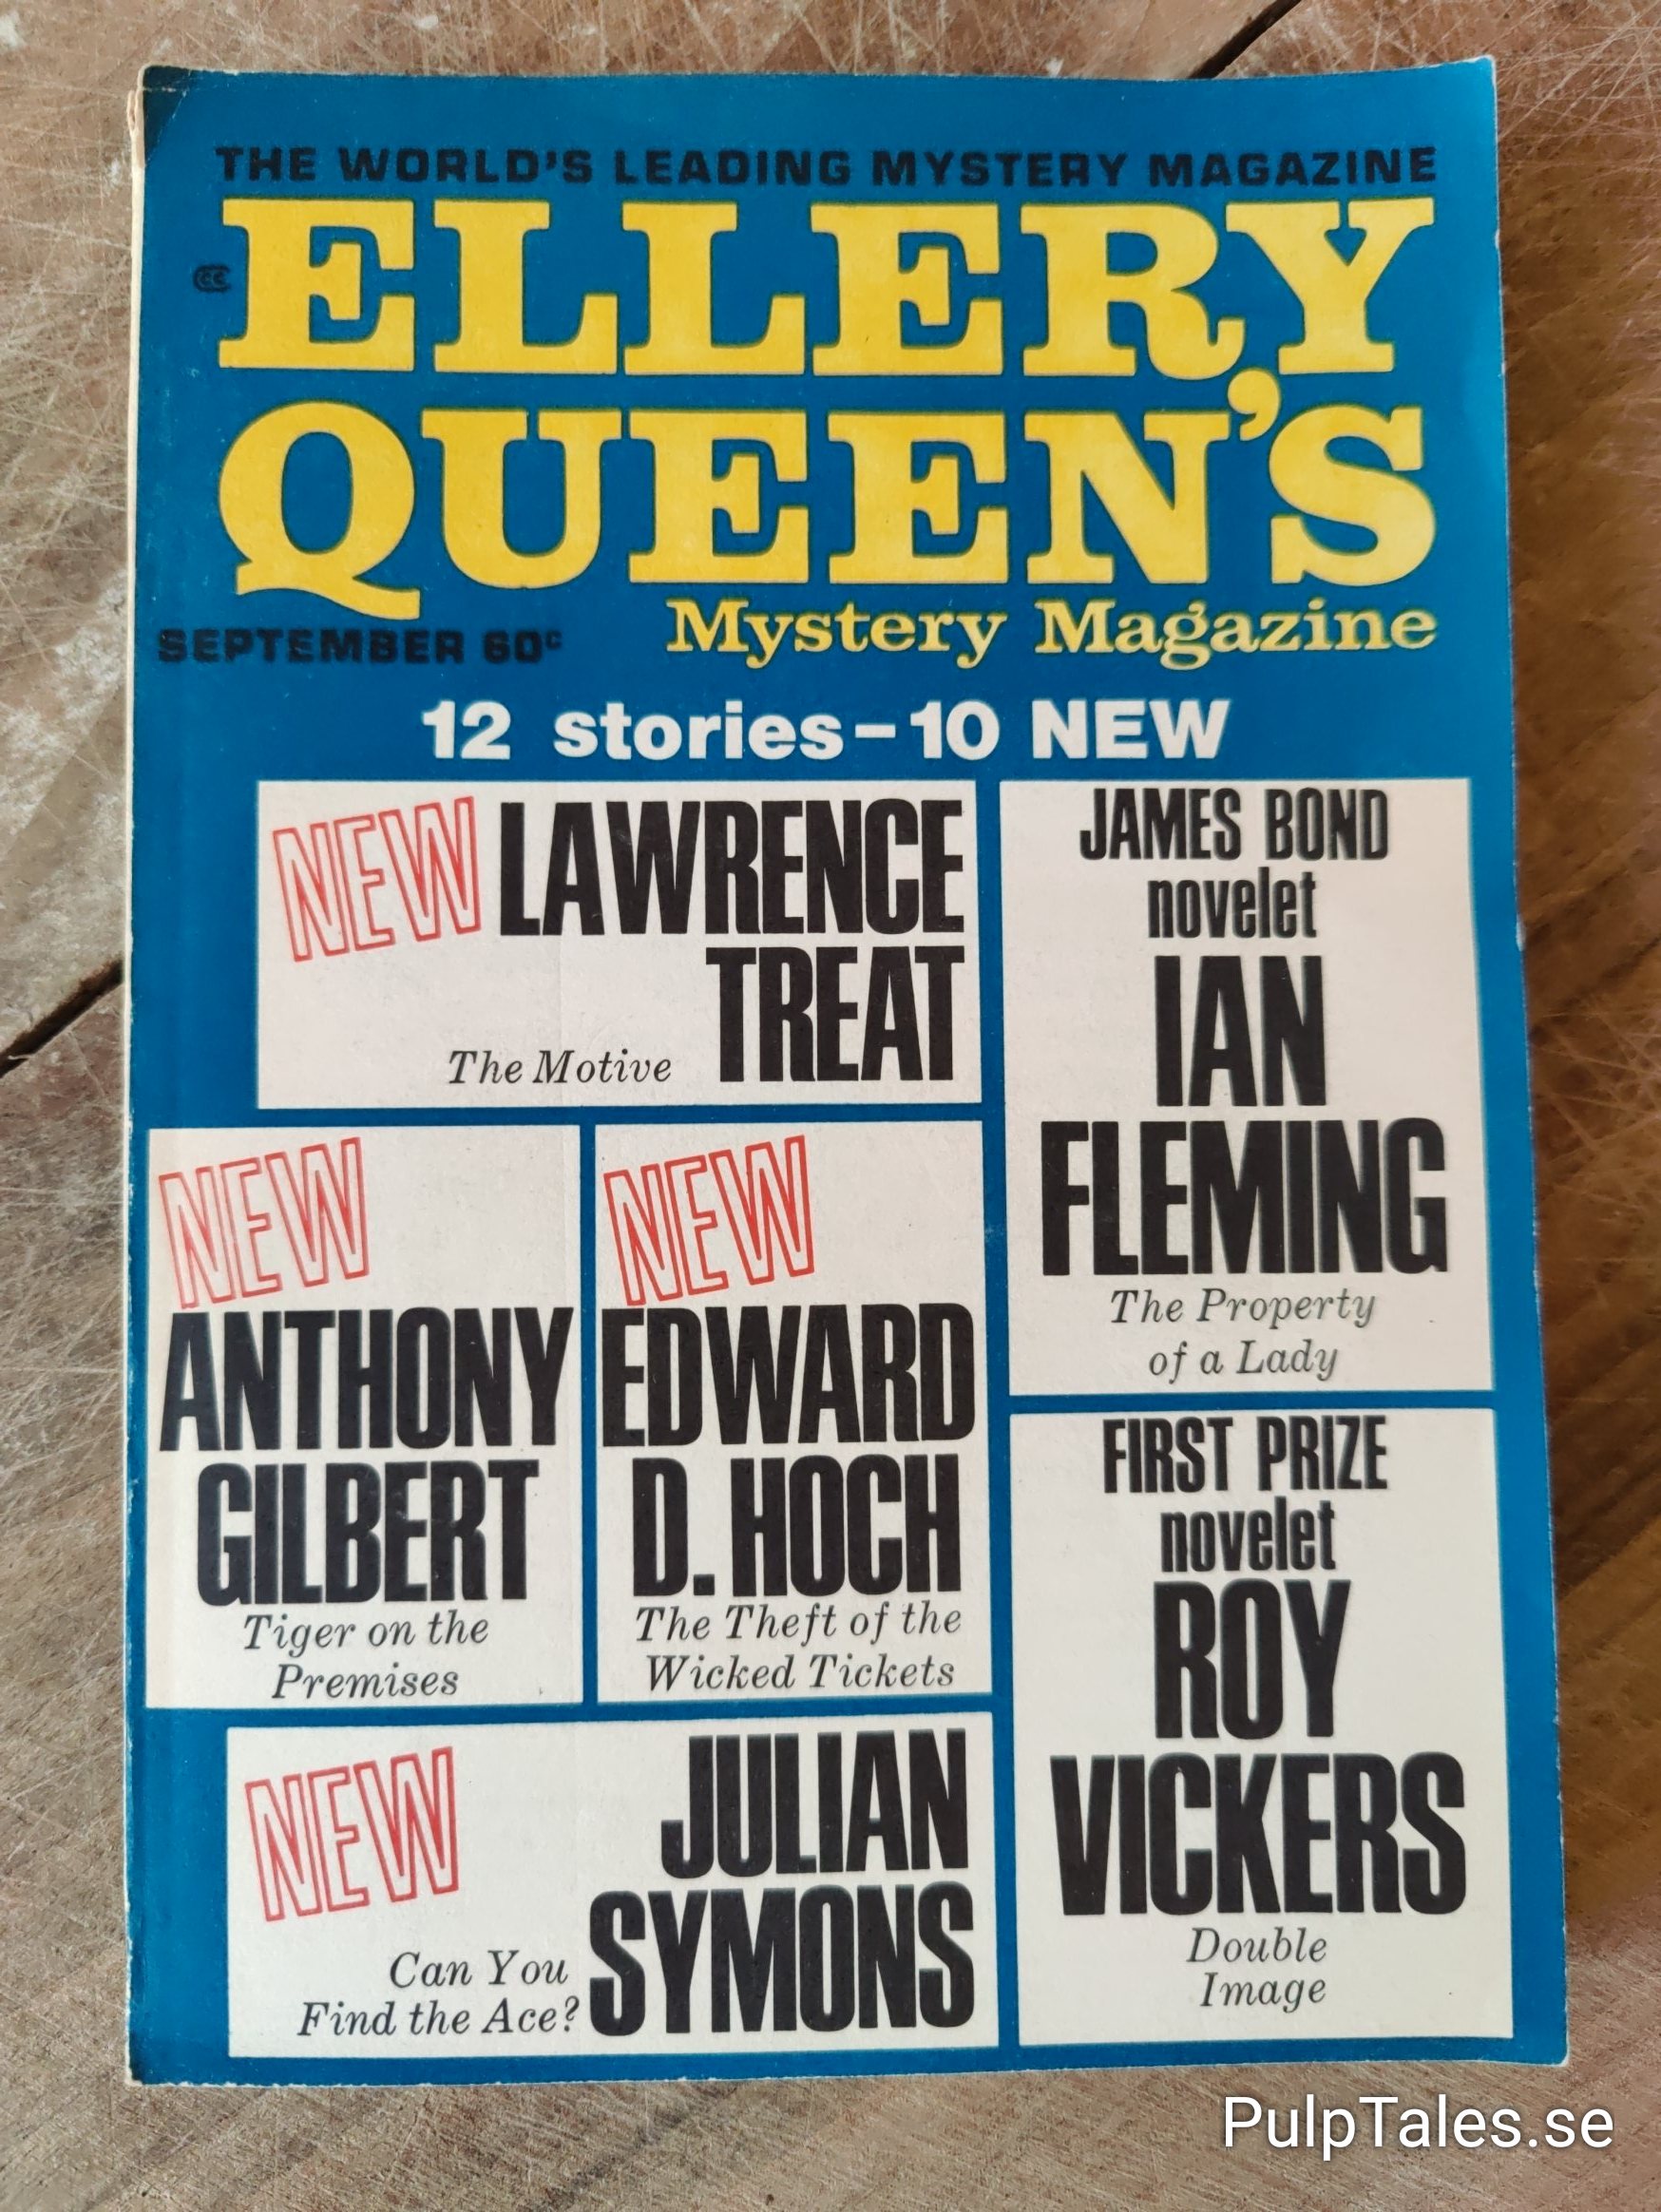 Ellery Queen Ellery Queen's Mystery Magazine, Sept 1969